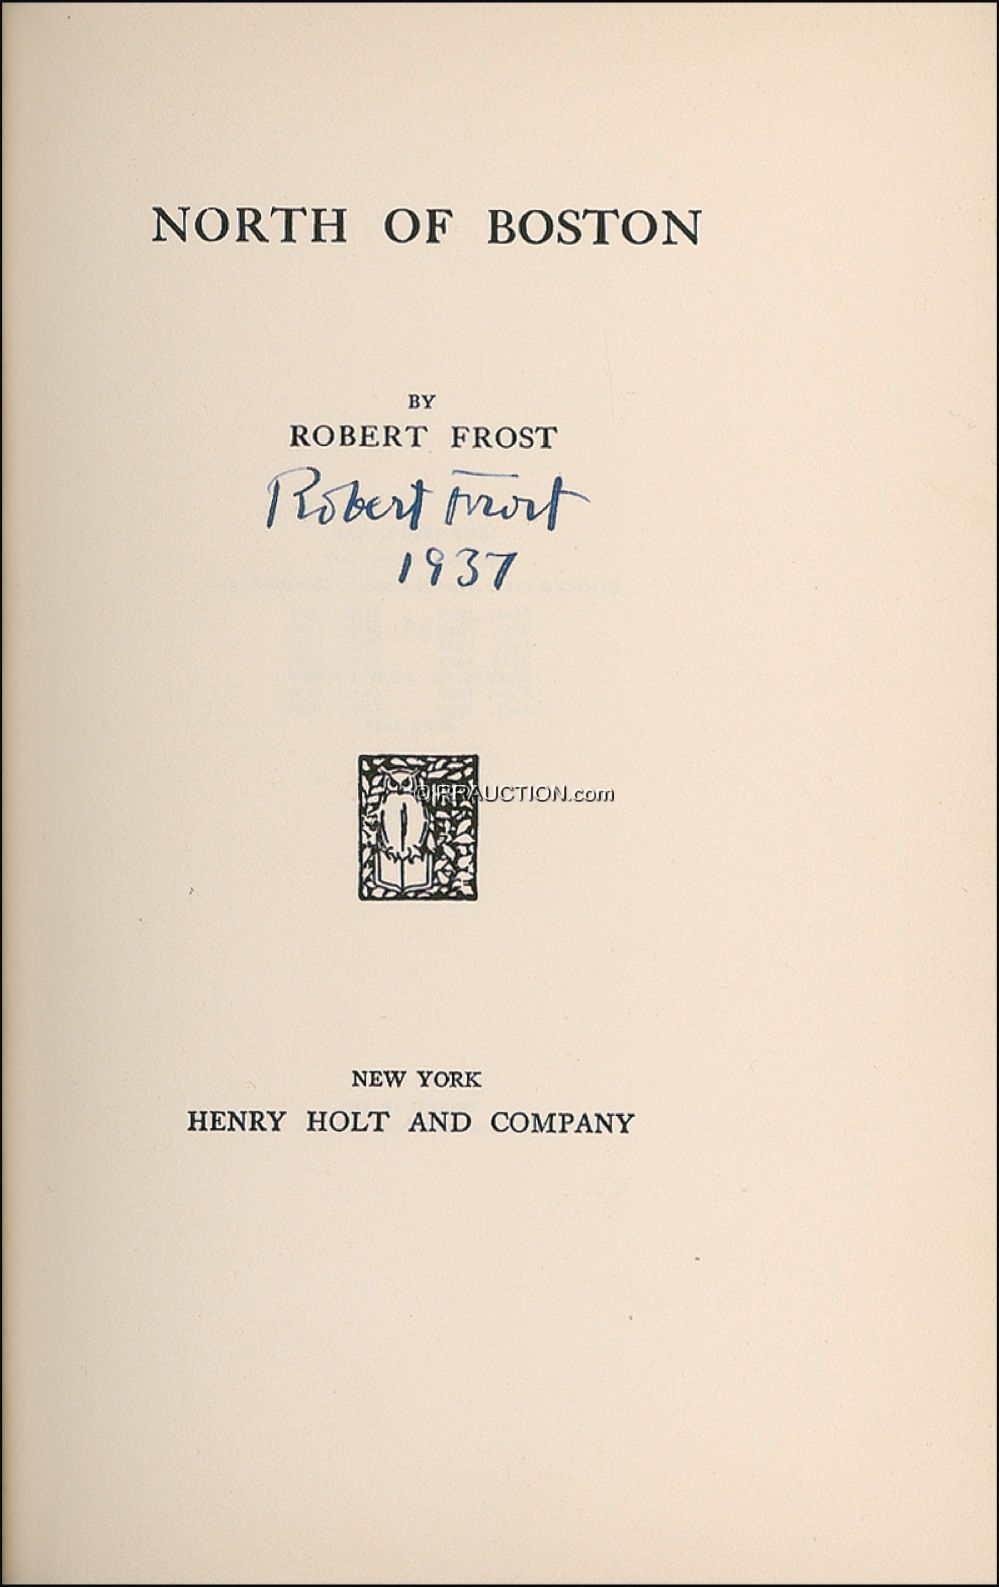 Lot #577 Robert Frost